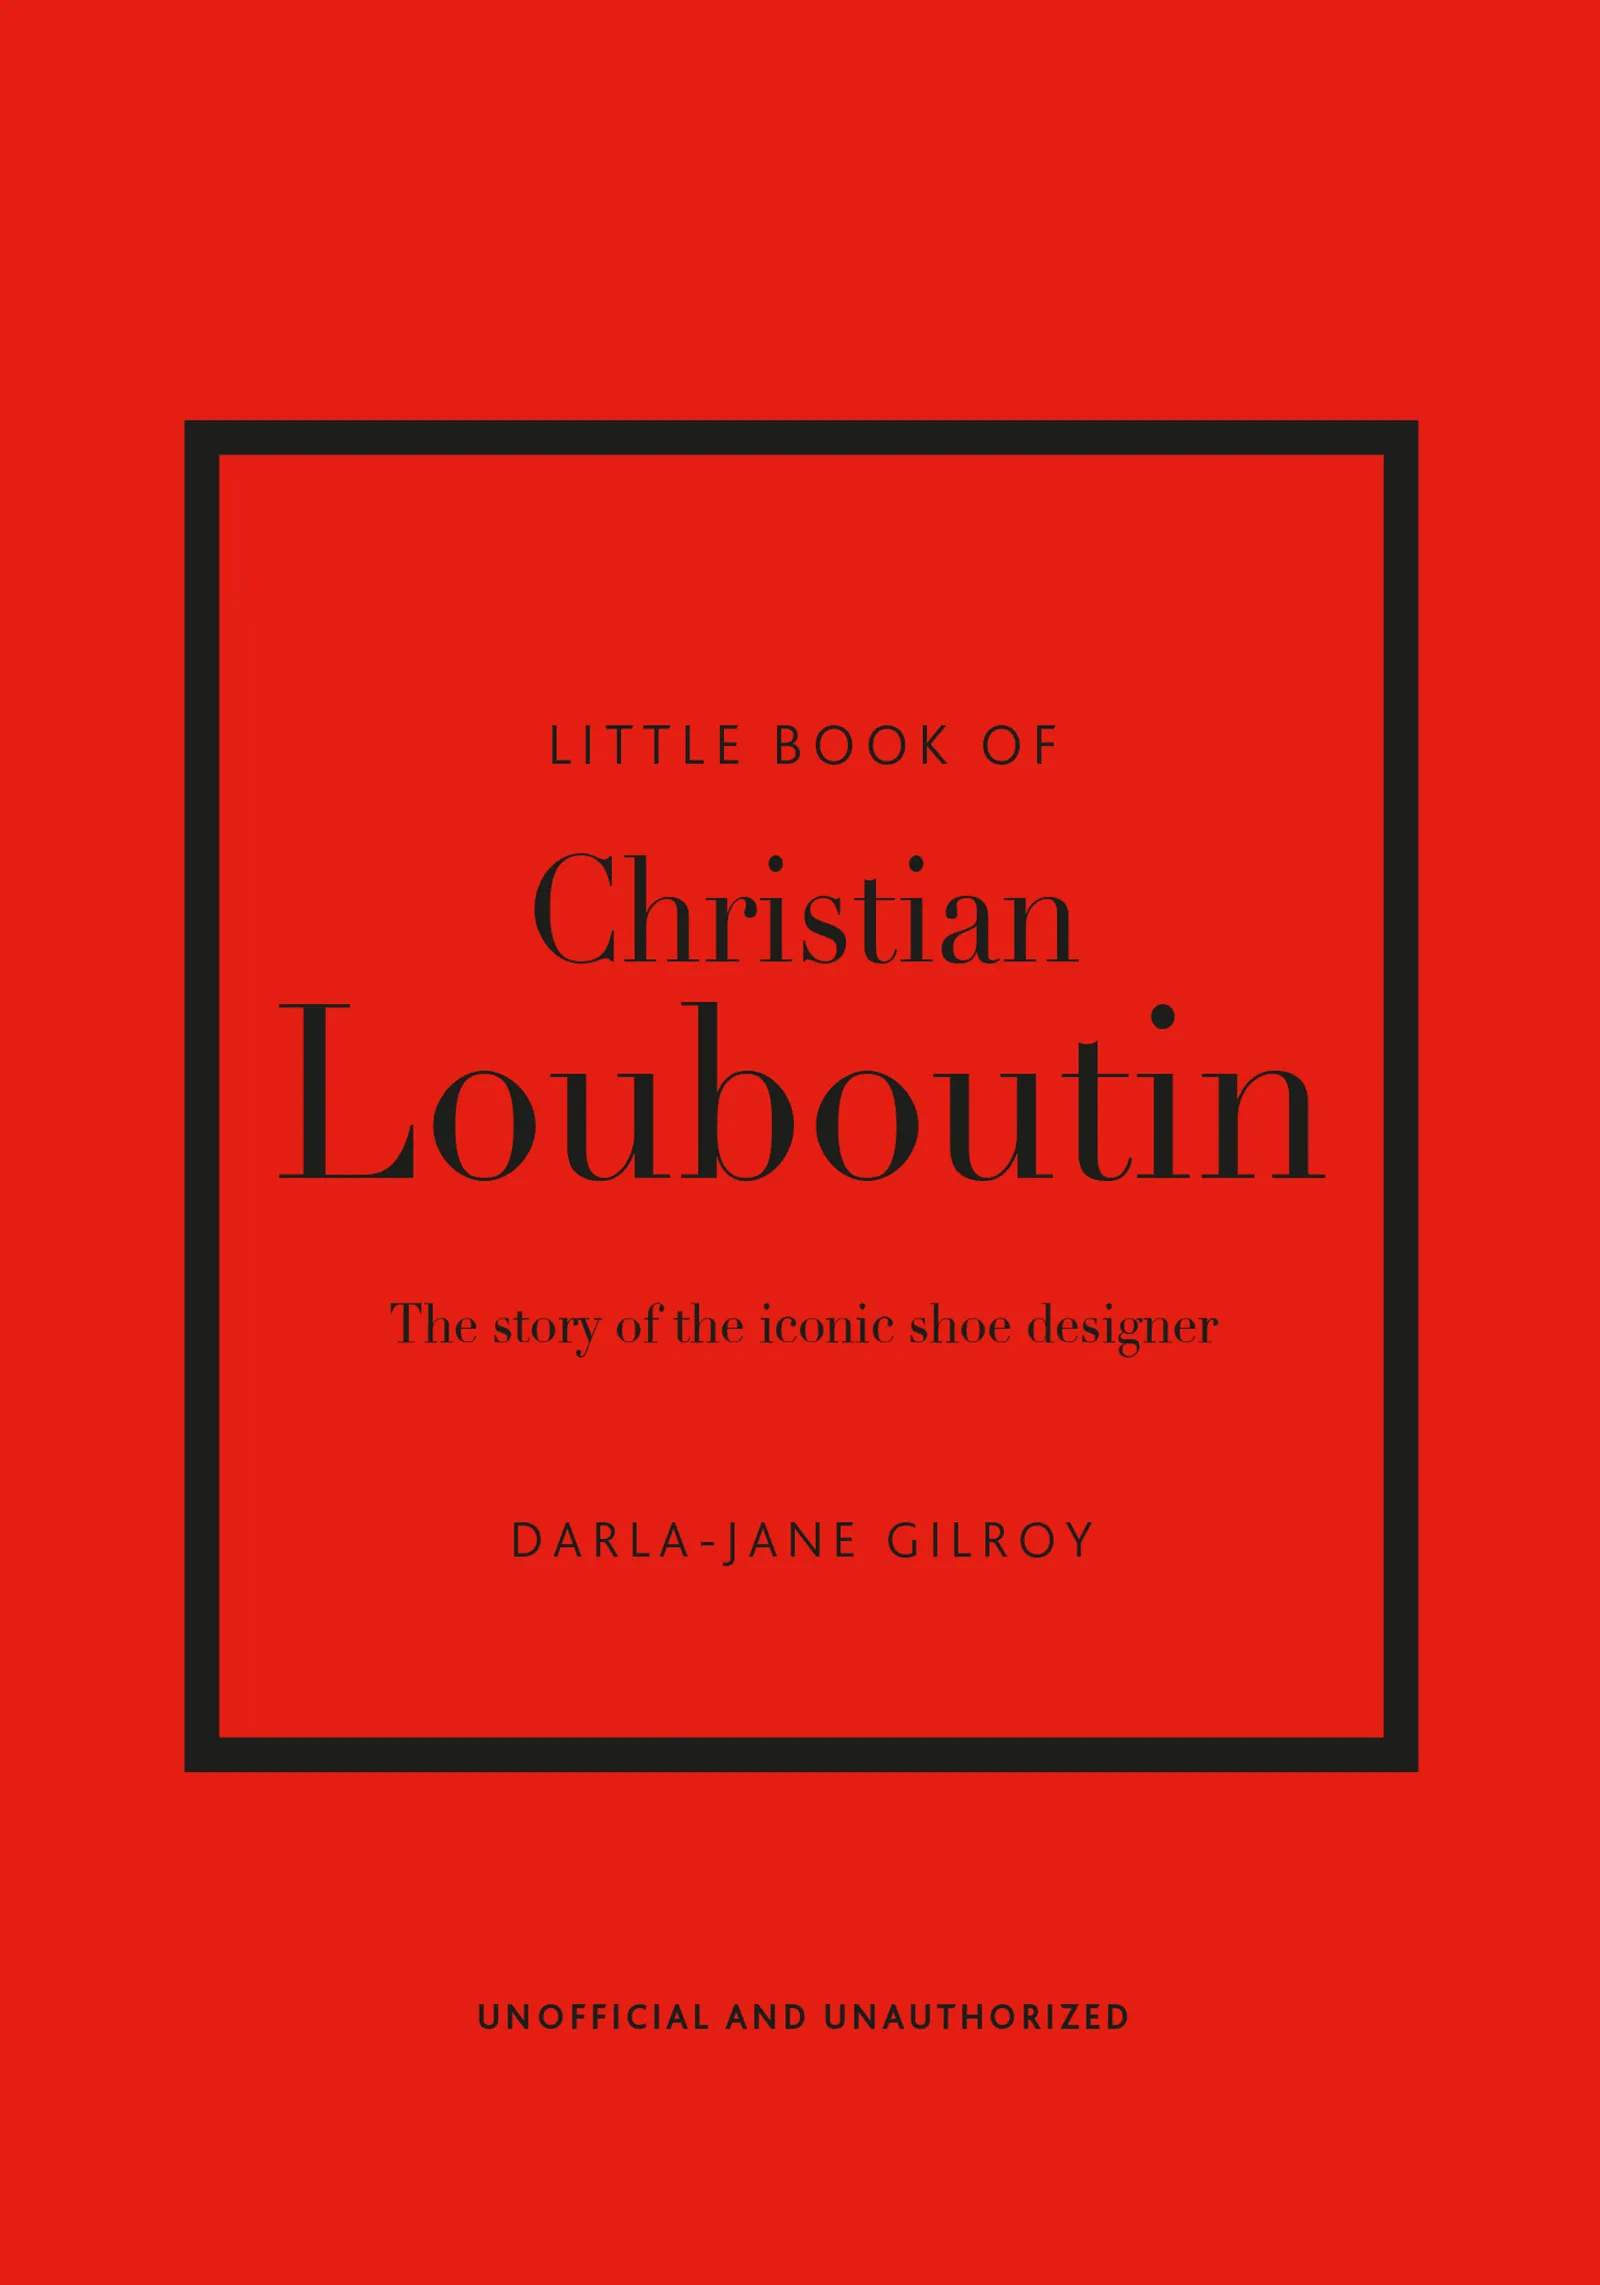 Little Book of Christian Louboutin øvrige bøger